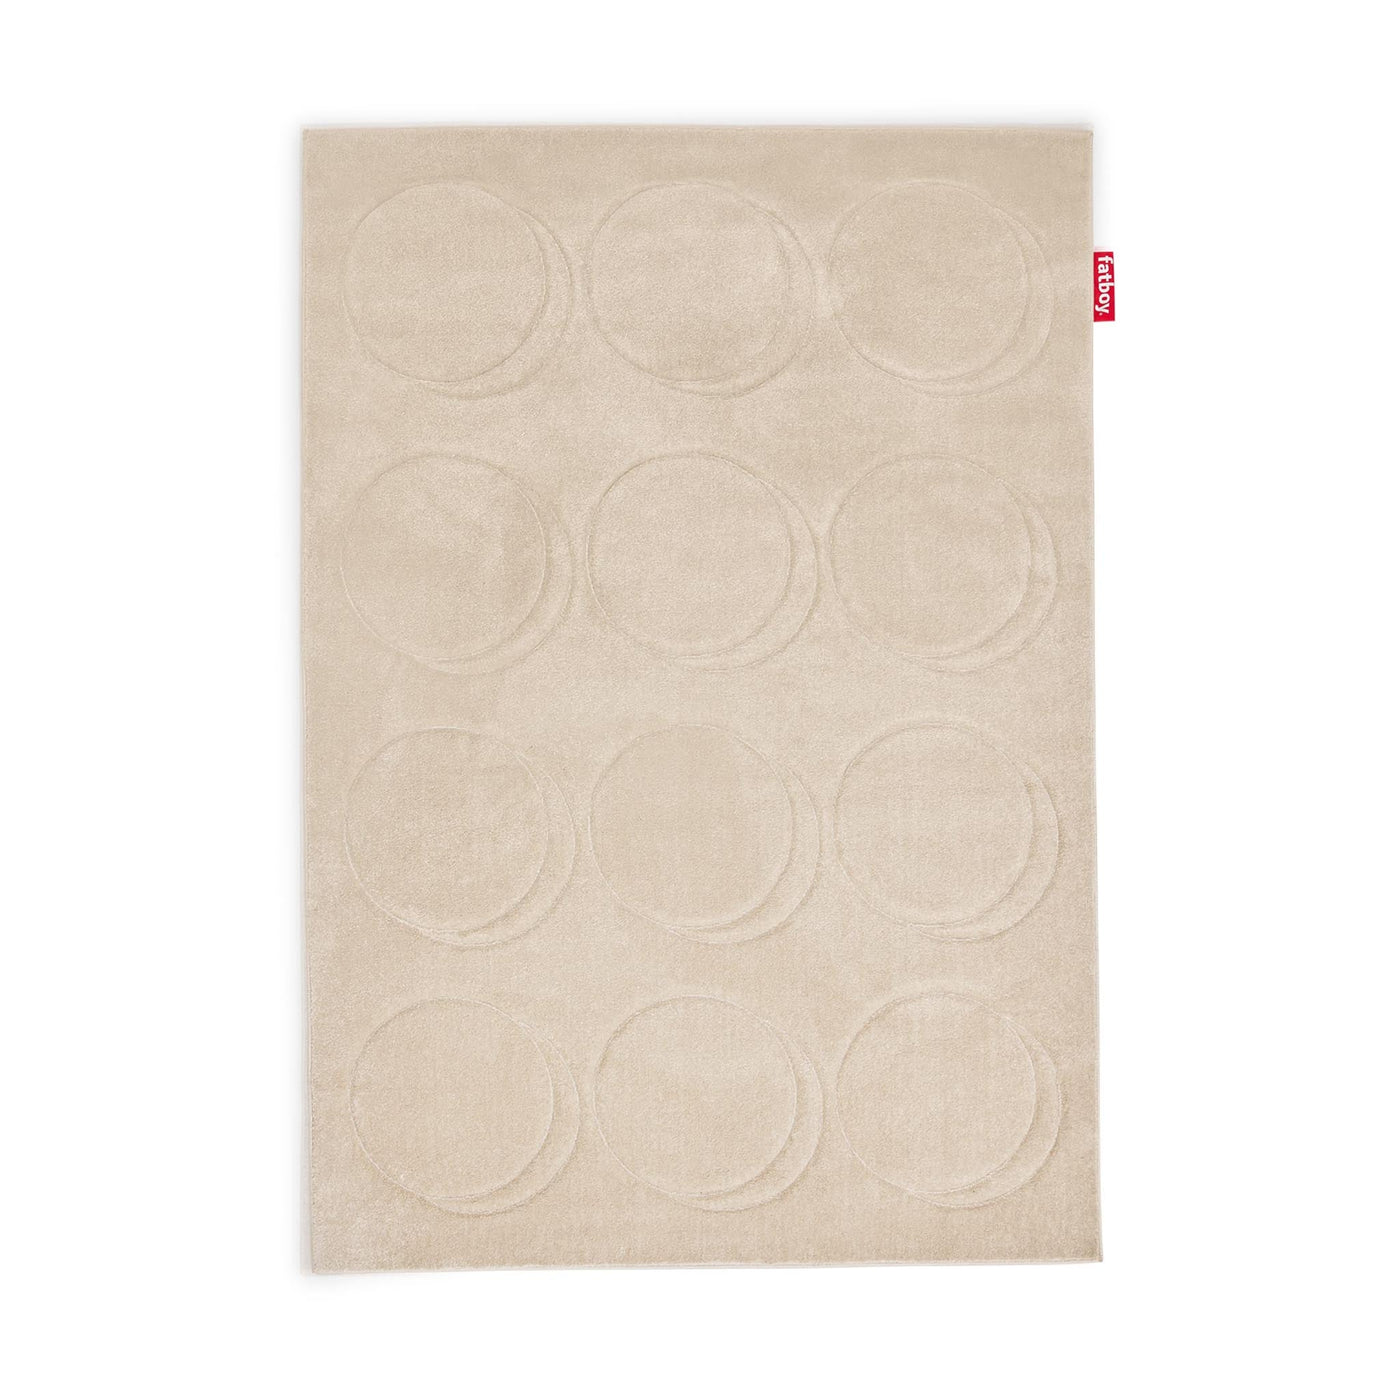 Fatboy Dot, tapis doux et de grande taille avec des motifs circulaires, en polypropylène, camel